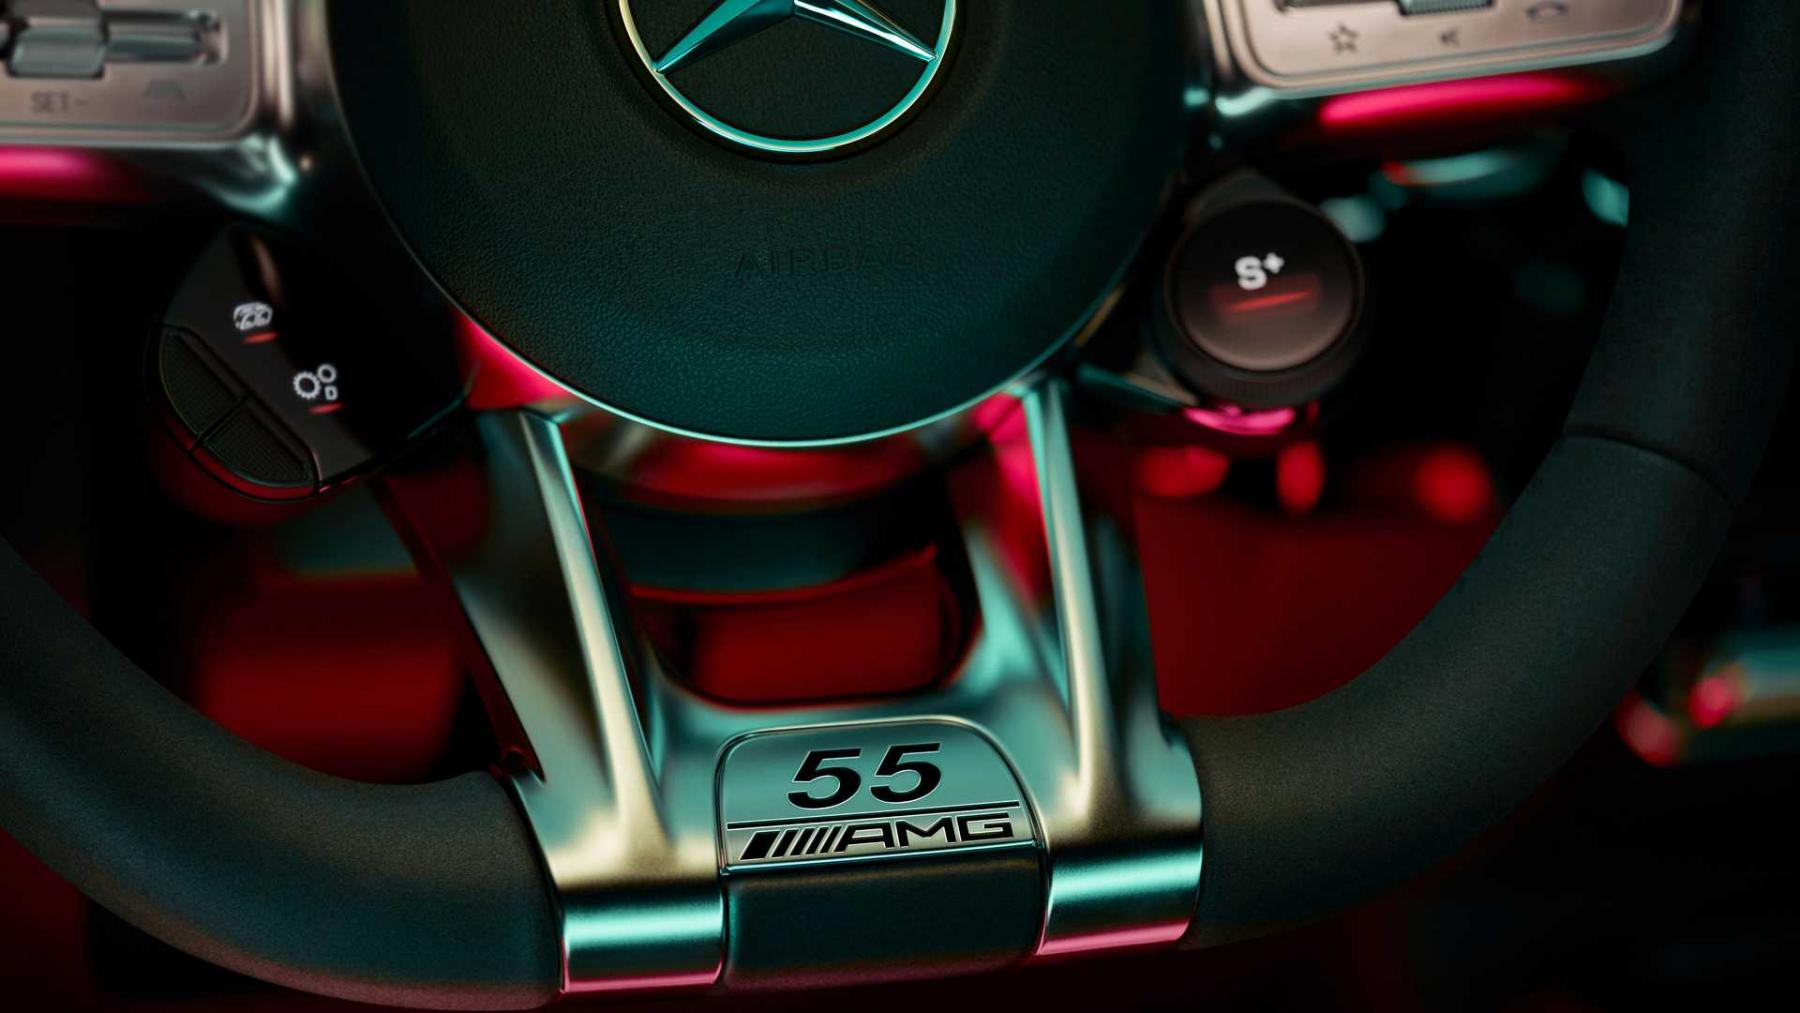 Mercedes-AMG CLA 45 "Edition 55"